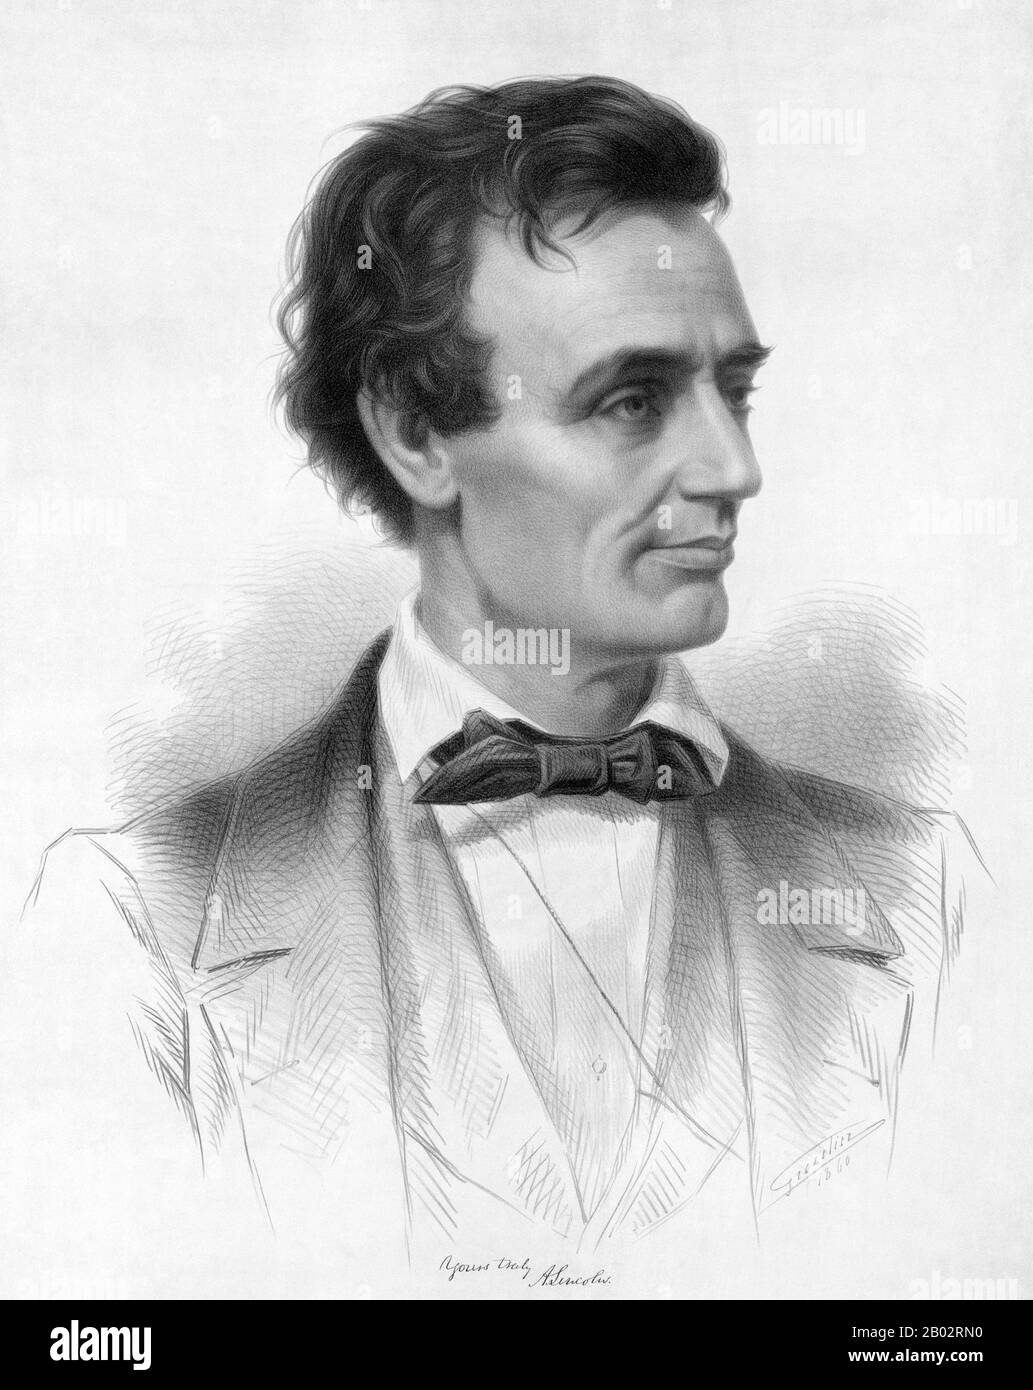 Abraham Lincoln (12 février 1809 – 15 avril 1865) fut le 16 président des États-Unis, servant de mars 1861 à son assassinat en avril 1865. Lincoln a conduit les États-Unis par sa guerre civile, sa guerre la plus sanglante et sa plus grande crise morale, constitutionnelle et politique. Ce faisant, il a préservé l'Union, aboli l'esclavage, renforcé le gouvernement fédéral et modernisé l'économie. Banque D'Images